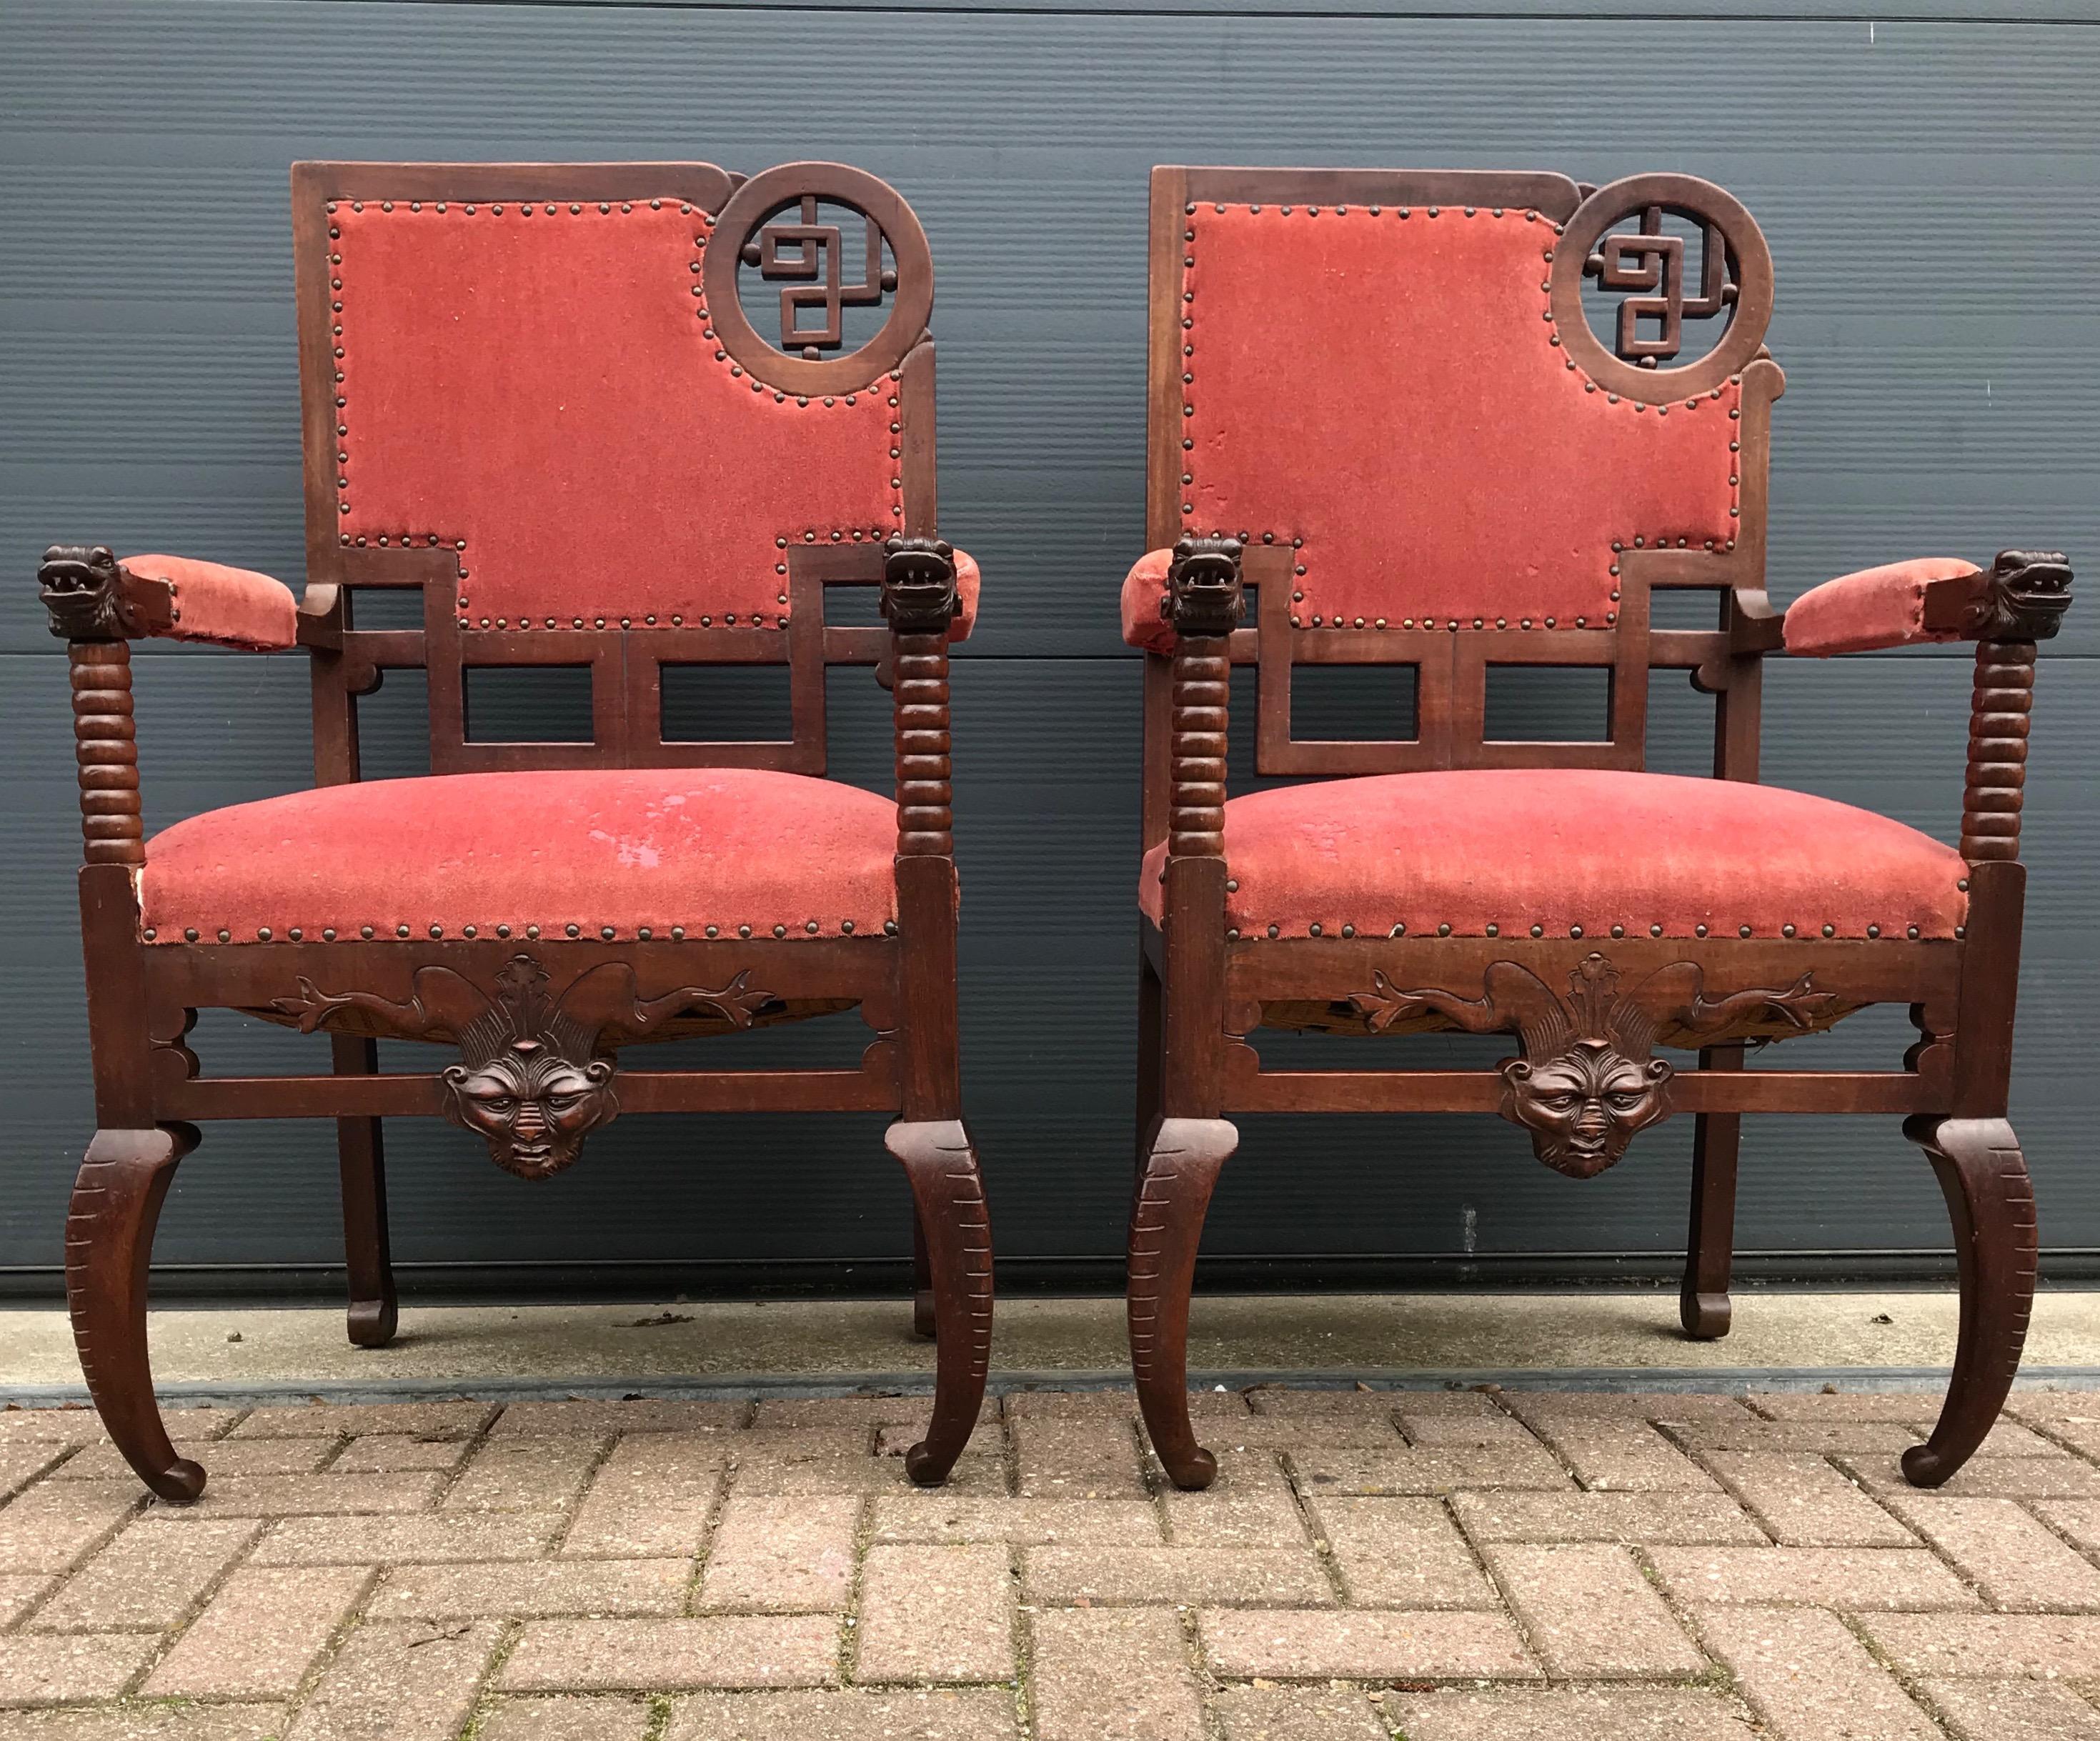 Ensemble impressionnant et très élégant de chaises artisanales de la fin des années 1800. 

Cette paire de chaises rares est aussi stable que le jour où elle a été fabriquée et le bois remarquable est également en bon état. Les cadres en bois dur